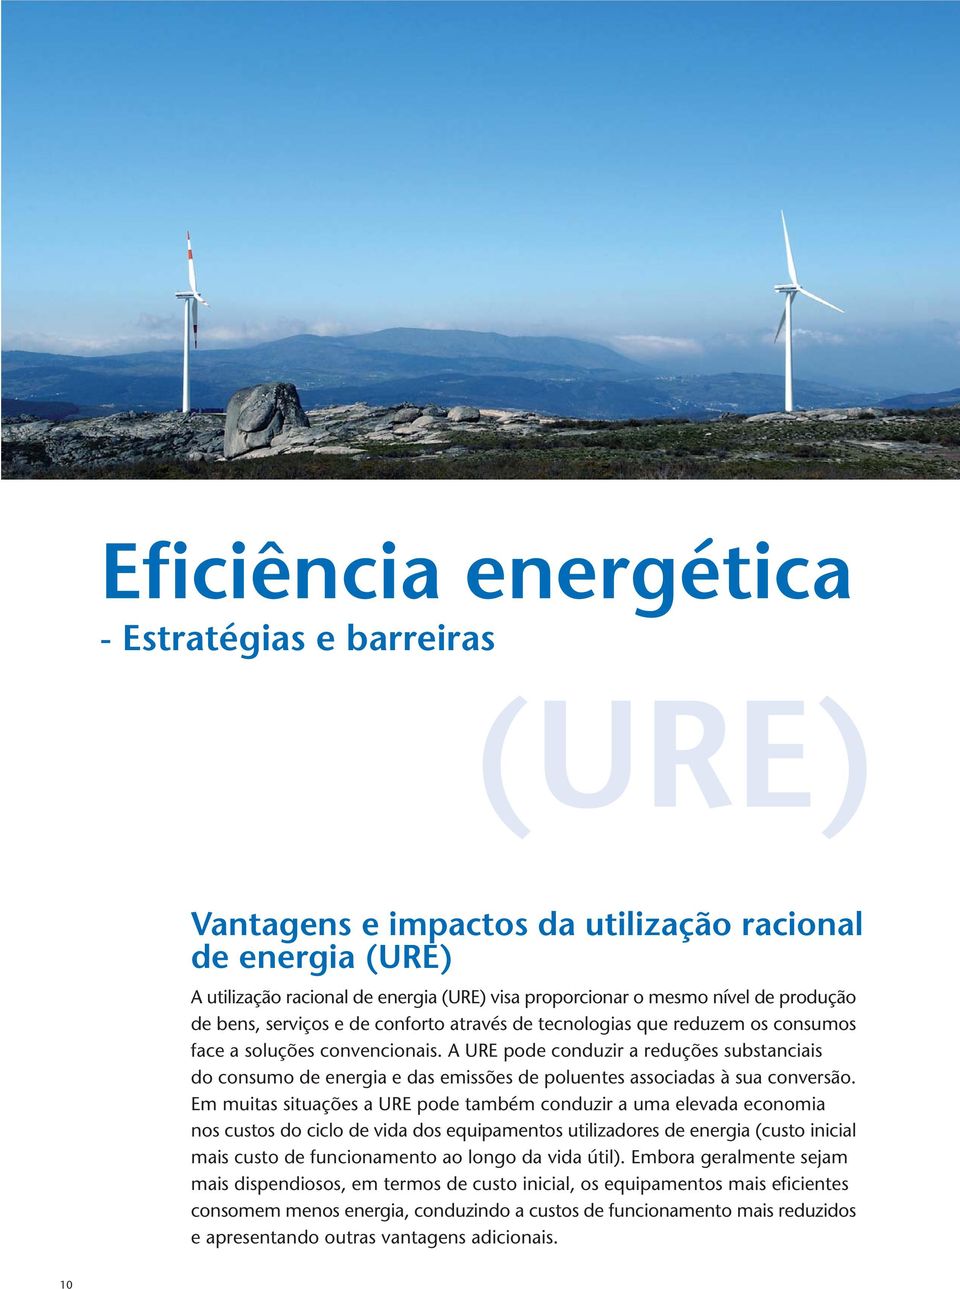 A URE pode conduzir a reduções substanciais do consumo de energia e das emissões de poluentes associadas à sua conversão.